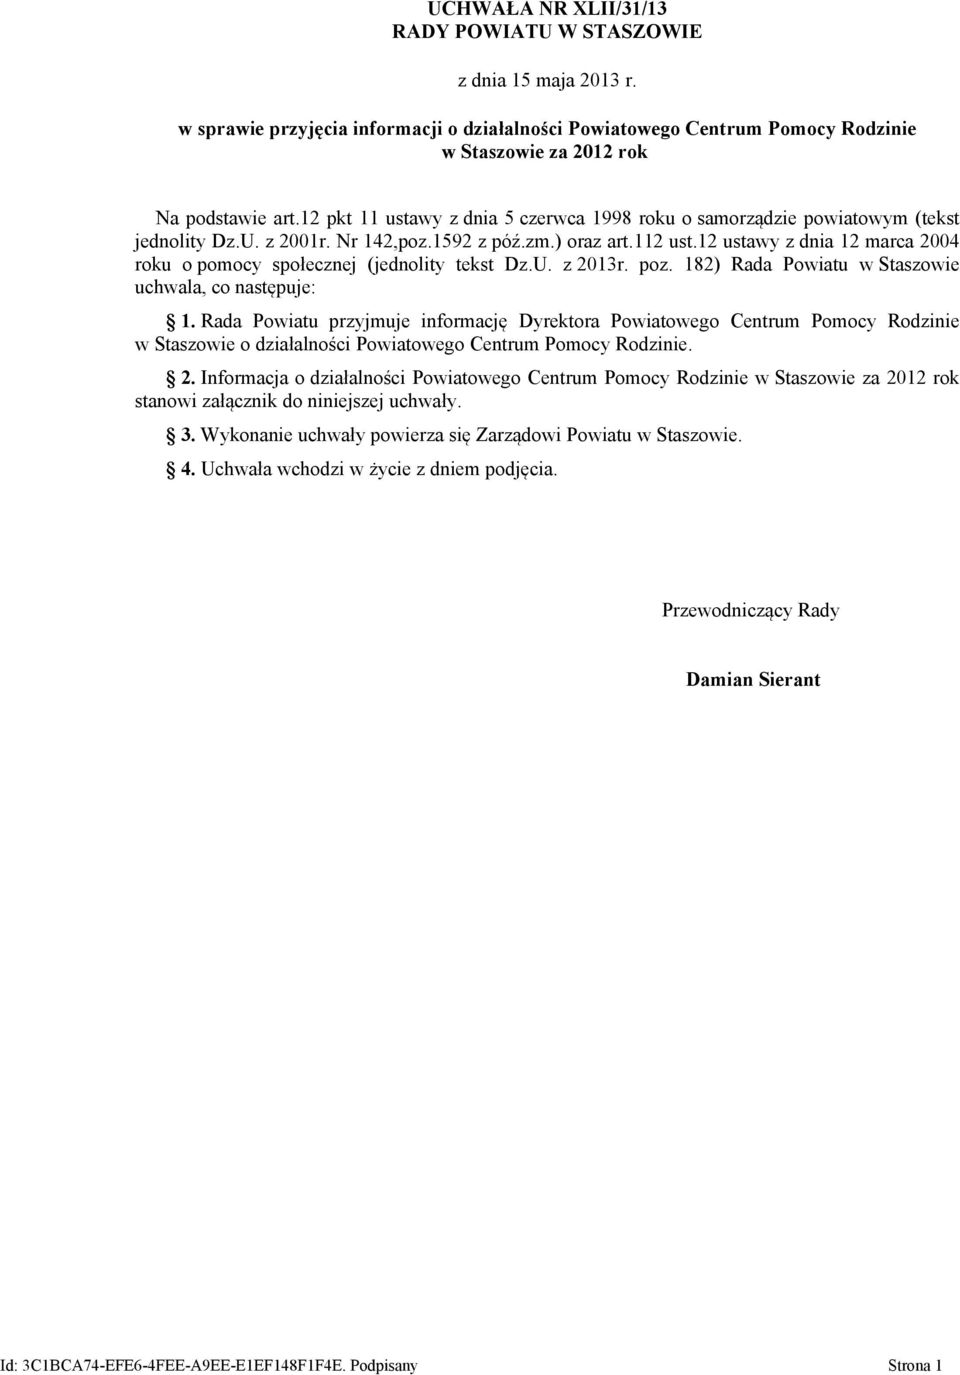 12 ustawy z dnia 12 marca 2004 roku o pomocy społecznej (jednolity tekst Dz.U. z 2013r. poz. 182) Rada Powiatu w Staszowie uchwala, co następuje: 1.